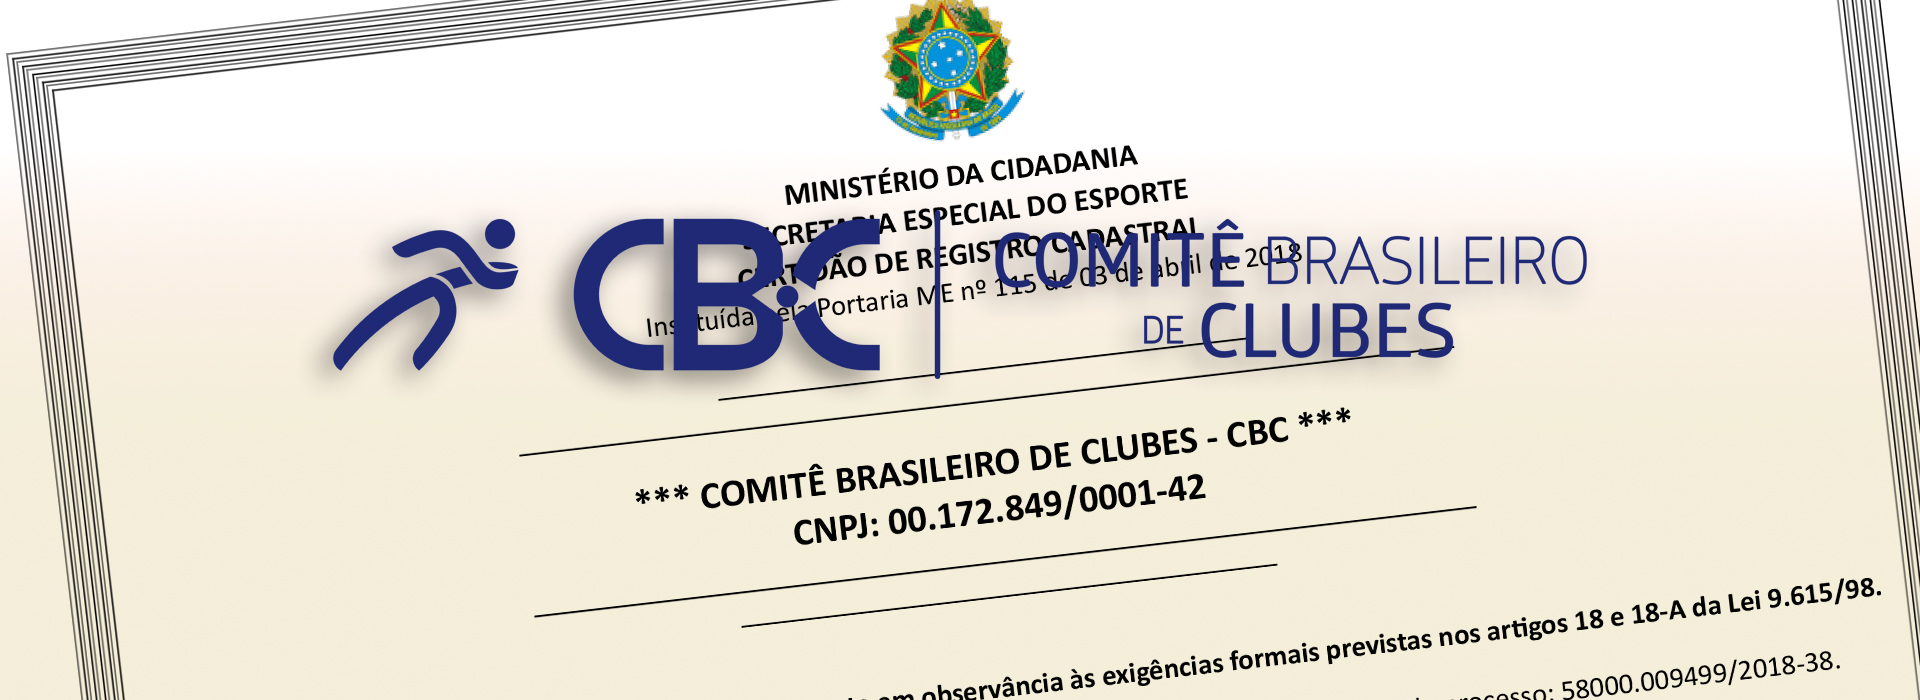 CBC renova sua Certidão de Registro Cadastral junto à Secretaria Especial do Esporte-SEE